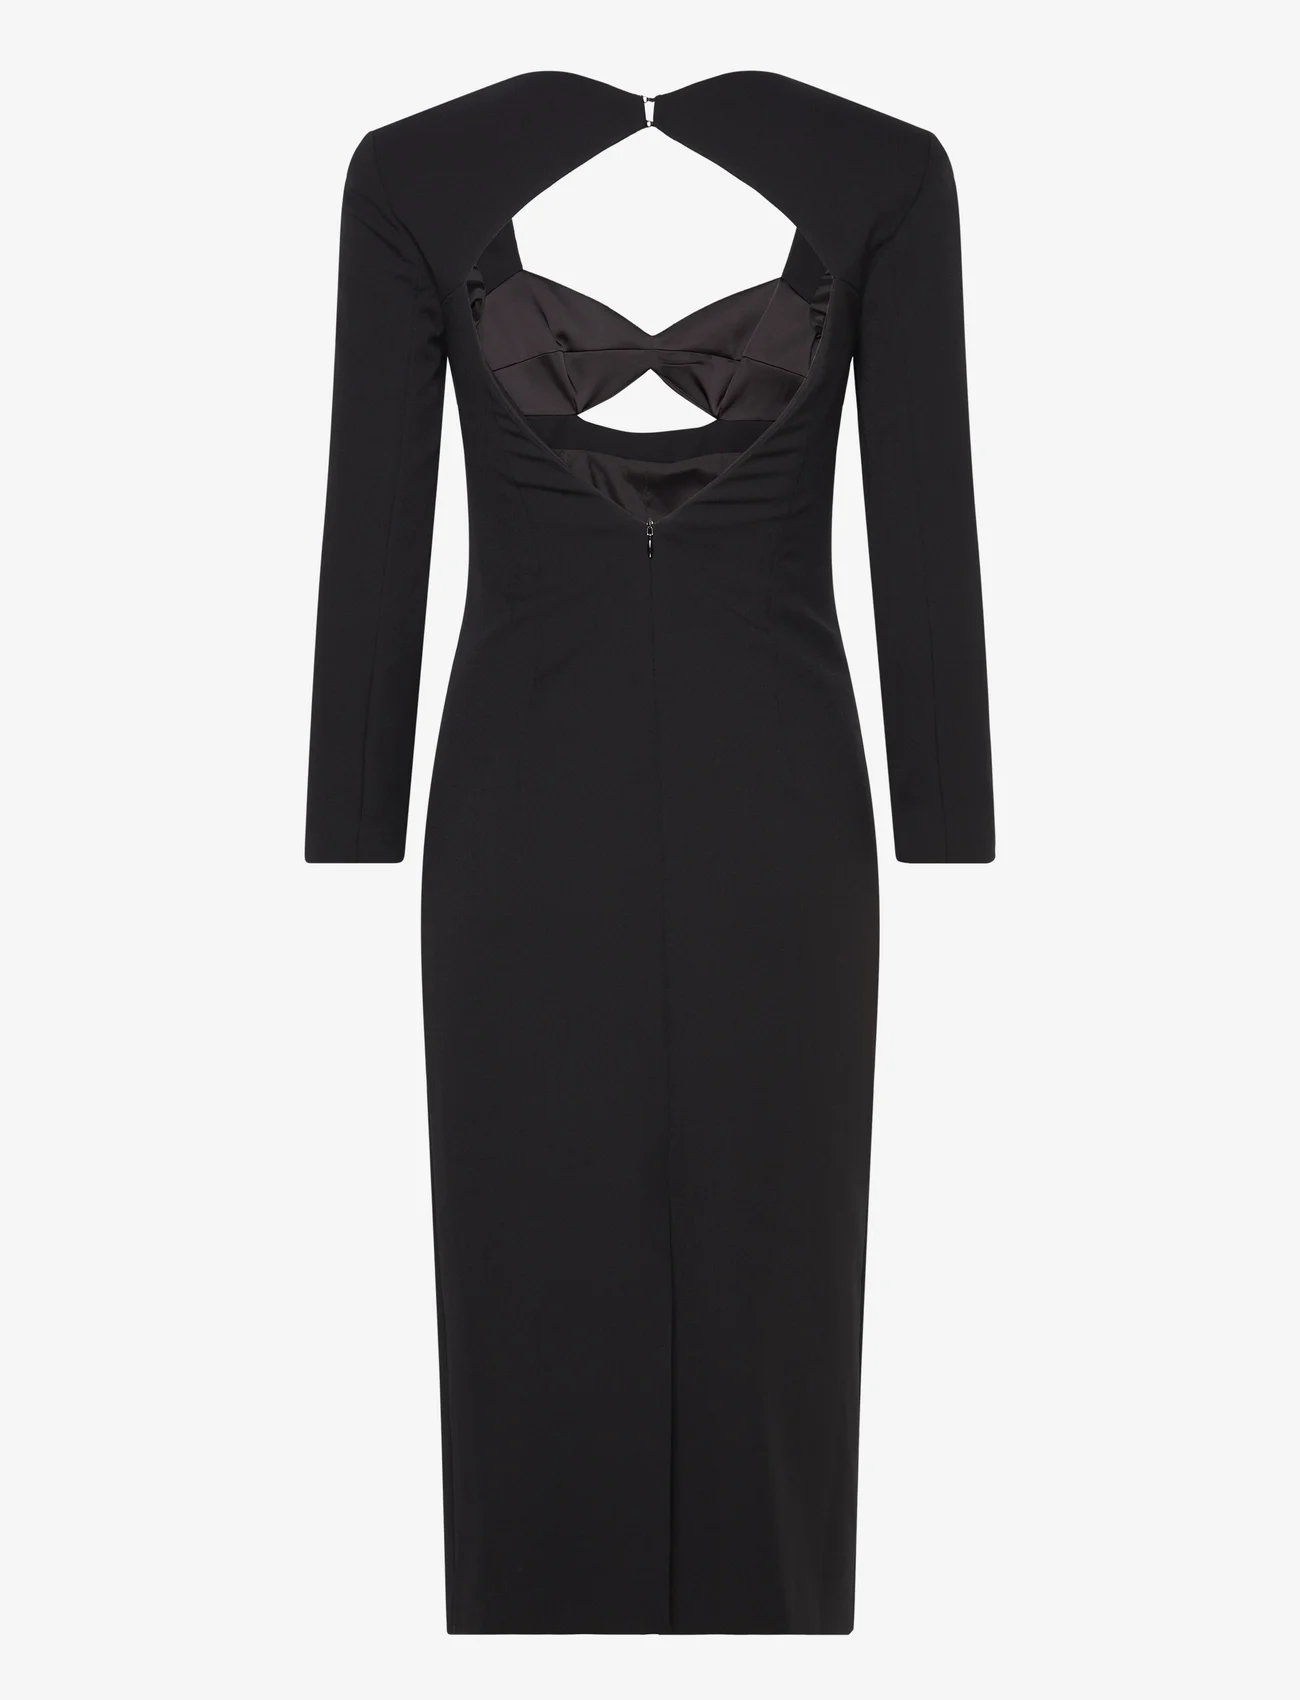 Karl Lagerfeld - evening cut out dress - festkläder till outletpriser - black - 1